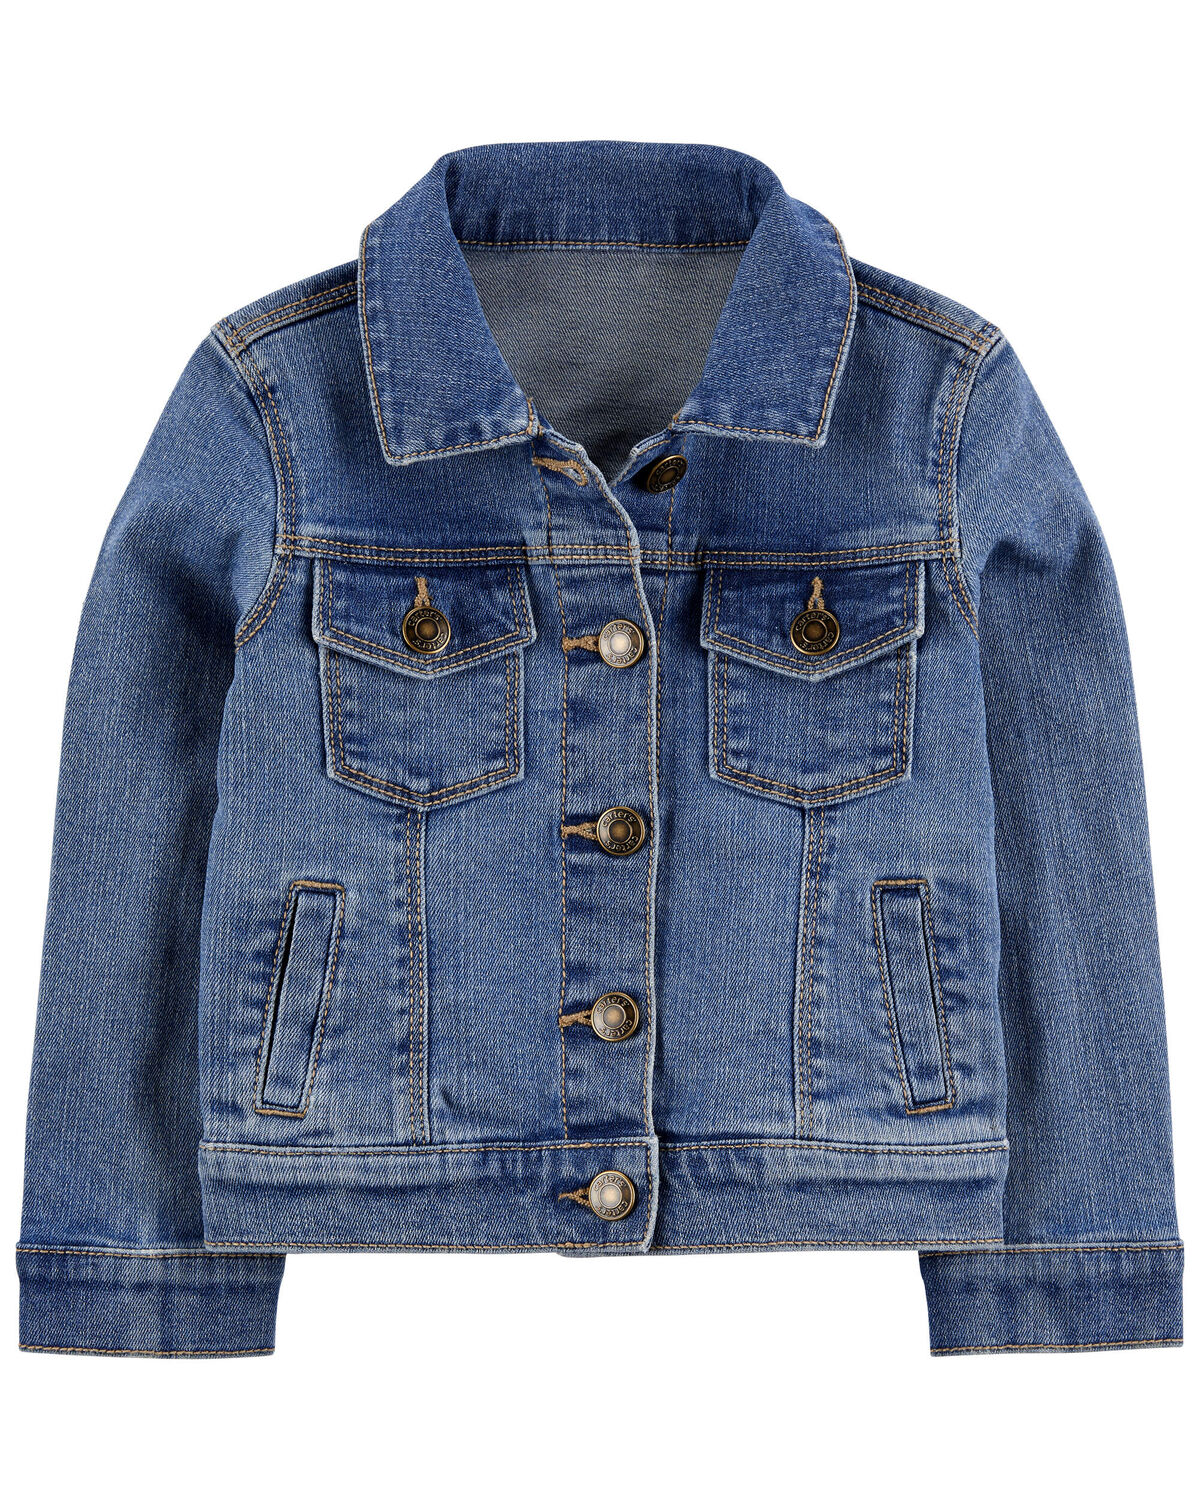 Blue Toddler Denim Jacket | carters.com